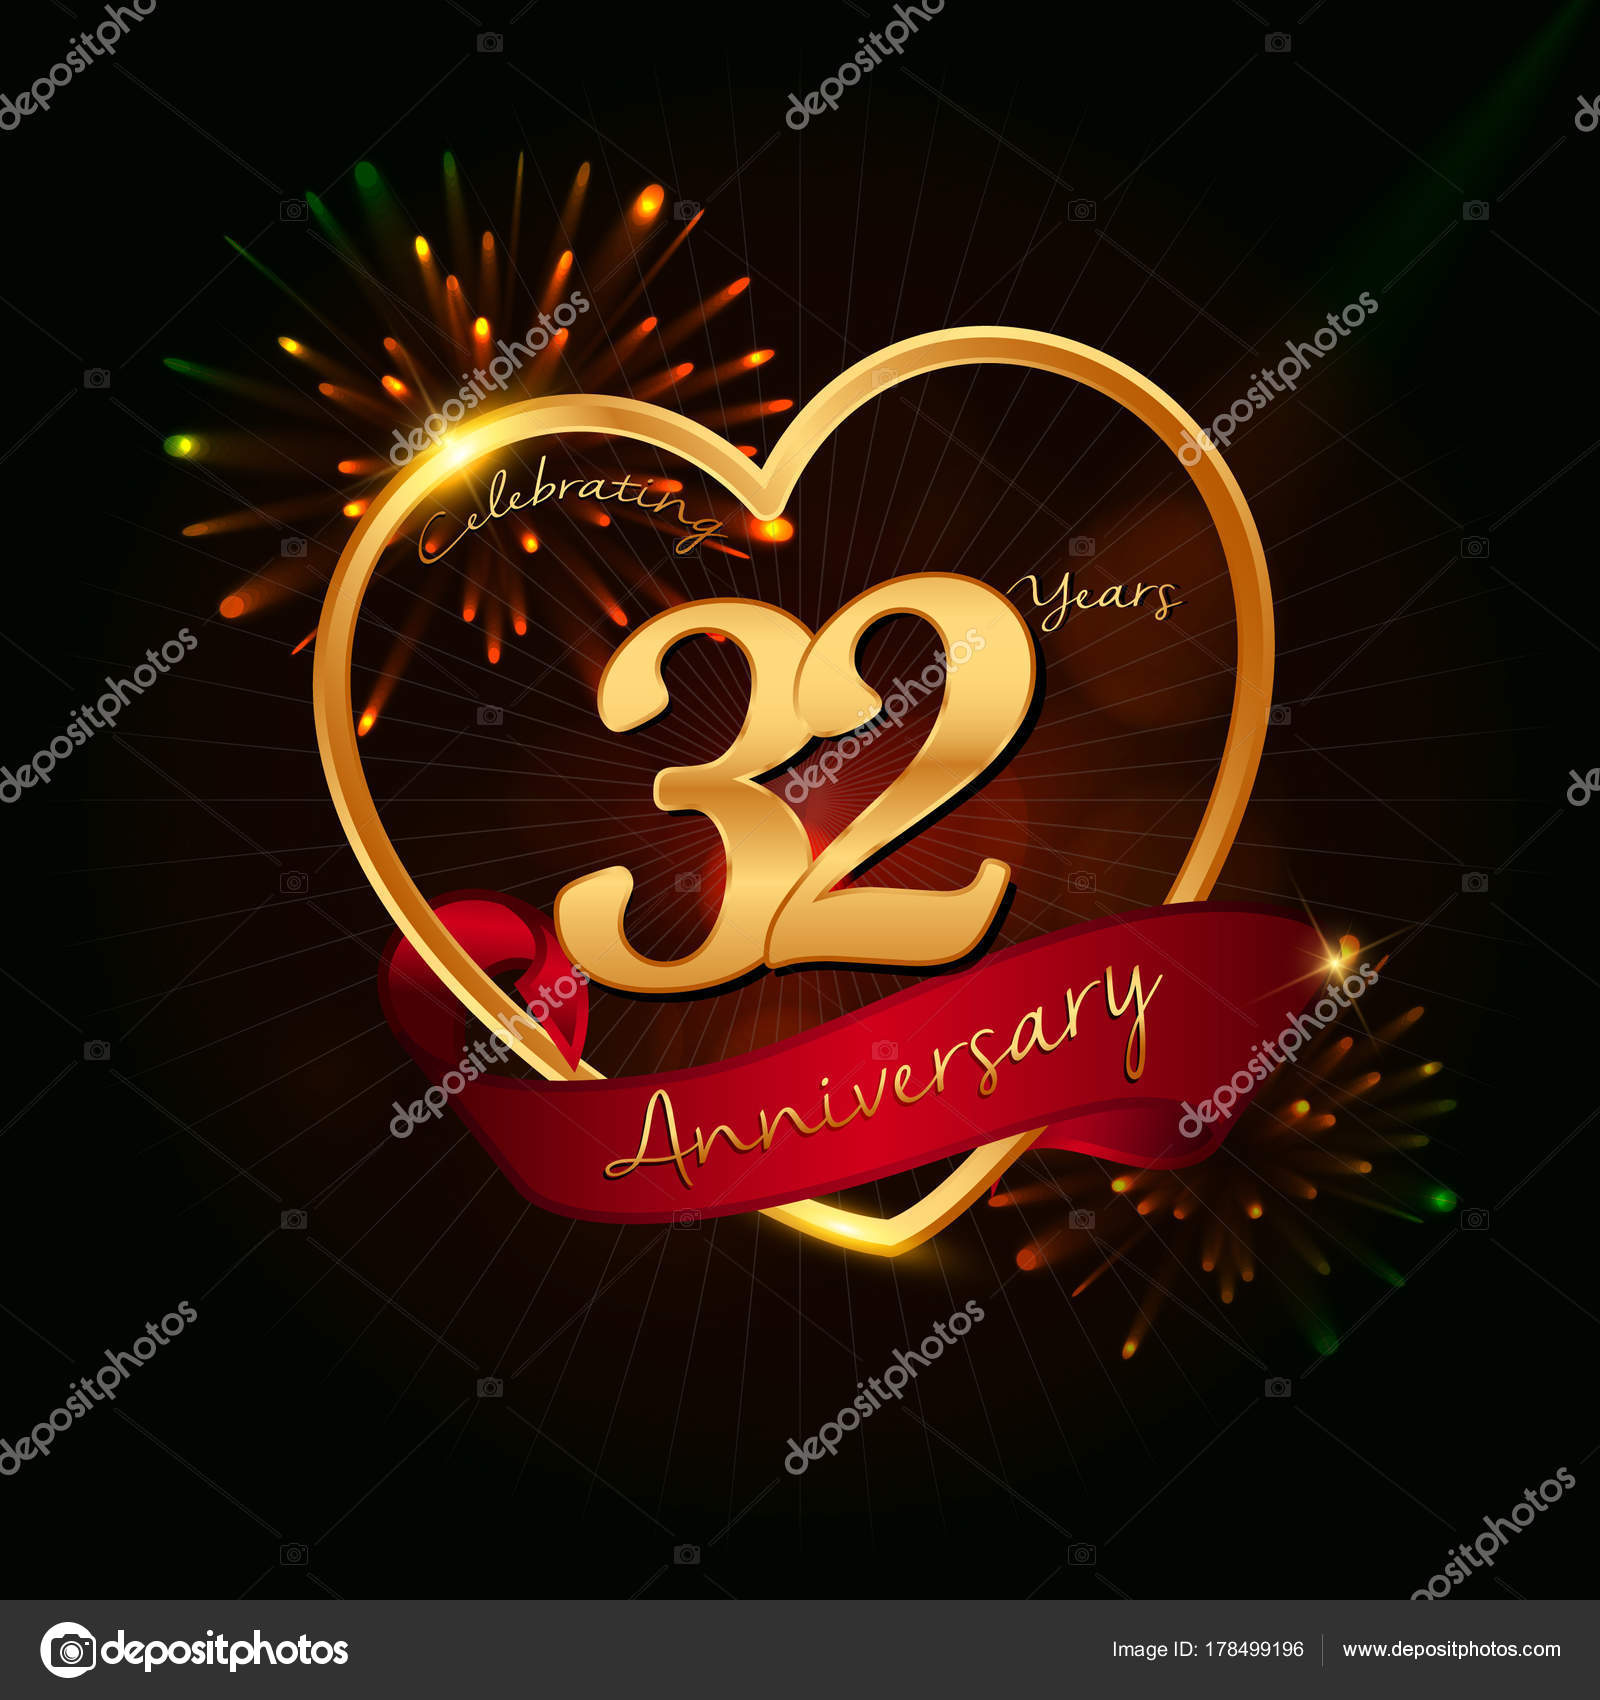 36 Anniversario Di Matrimonio.32 Years Anniversary Logo Stock Vector C Seklihermantaputra